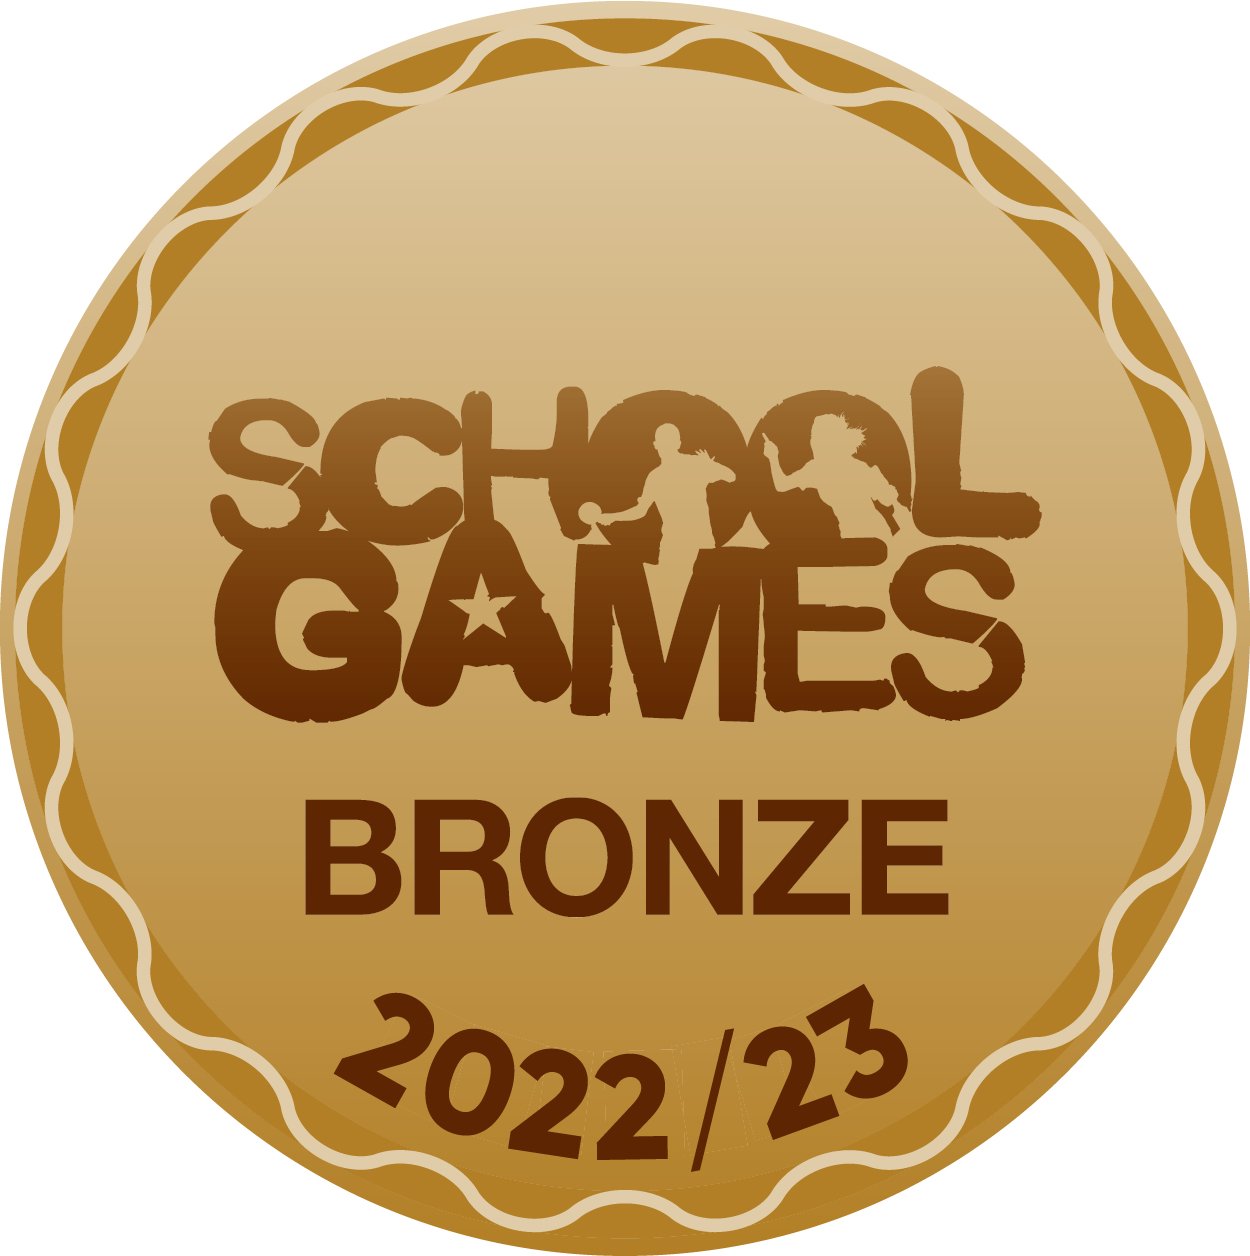 BRONZE School Games Mark